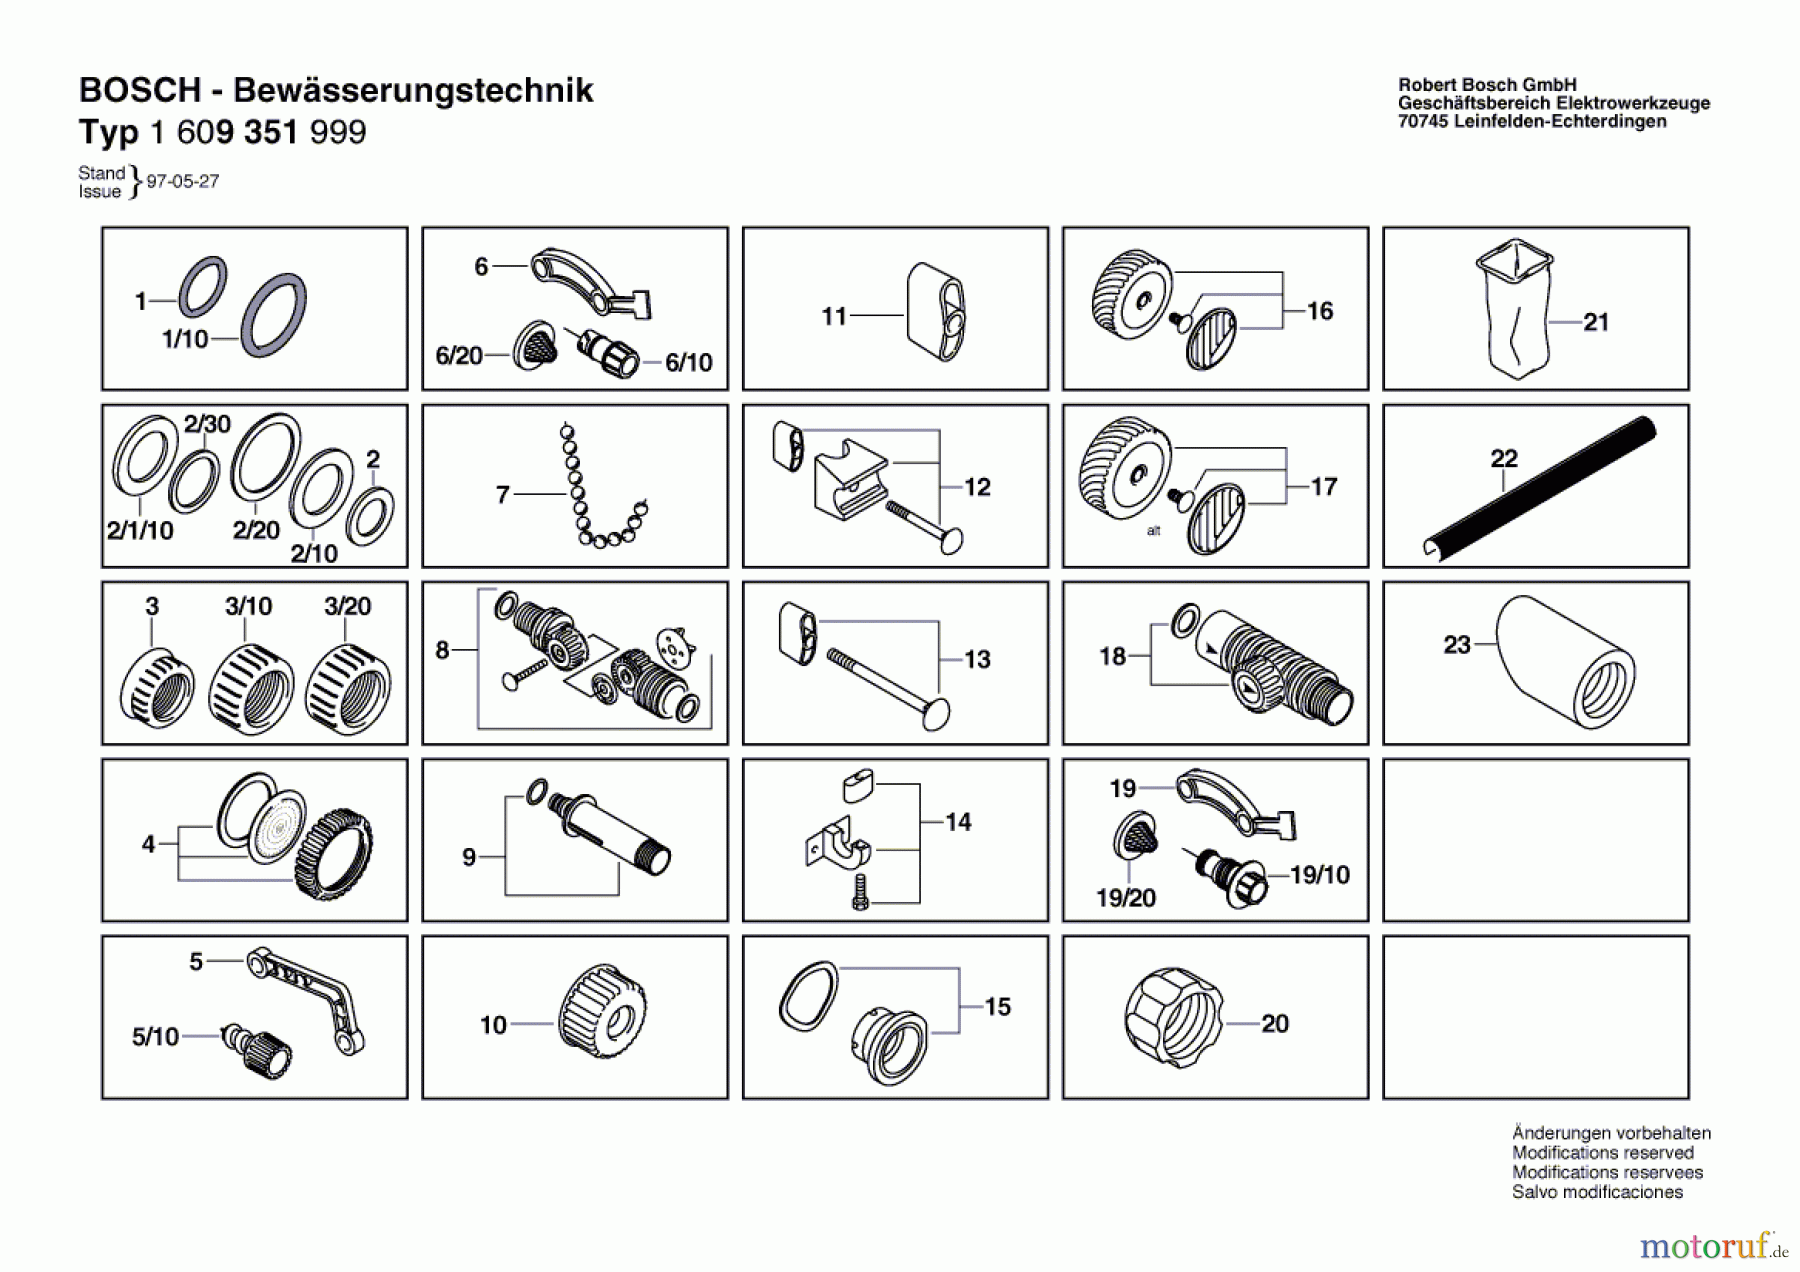  Bosch Werkzeug Kunststoffbeutel ---- Seite 1